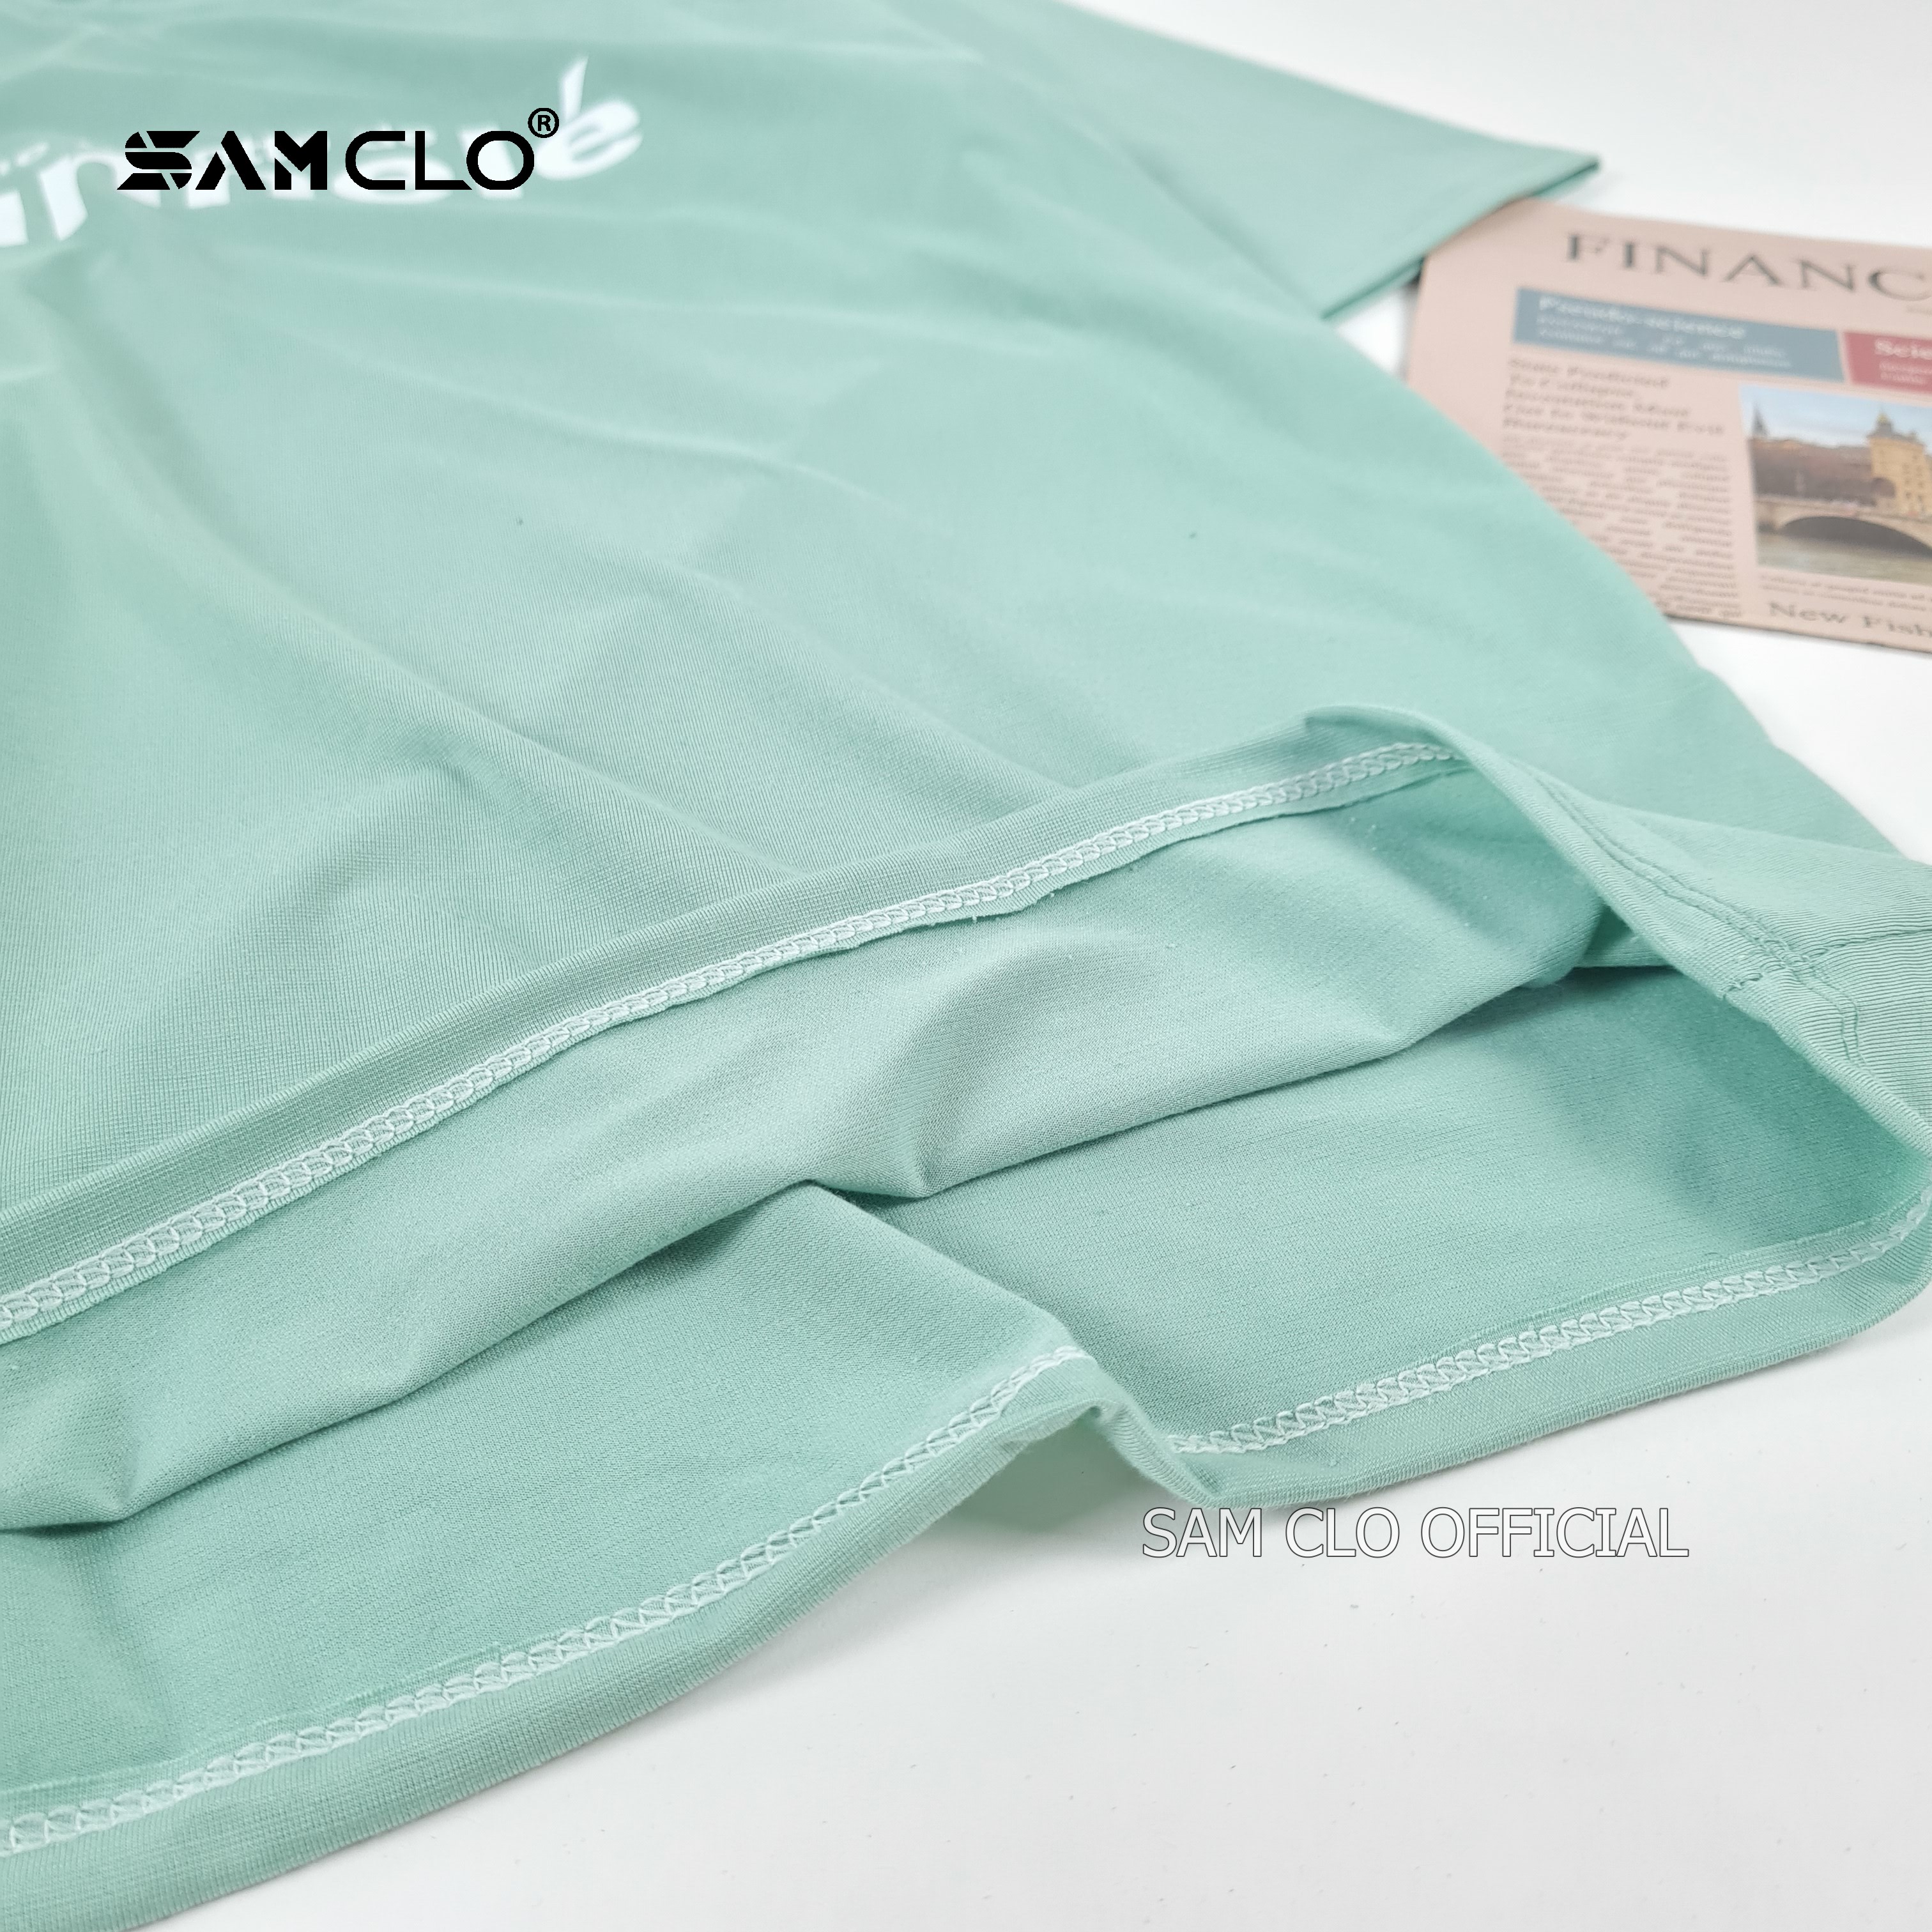 Áo phông tay lỡ nam nữ SAM CLO thun form rộng dáng Unisex - mặc cặp, nhóm, lớp in chữ CANNE LÉ